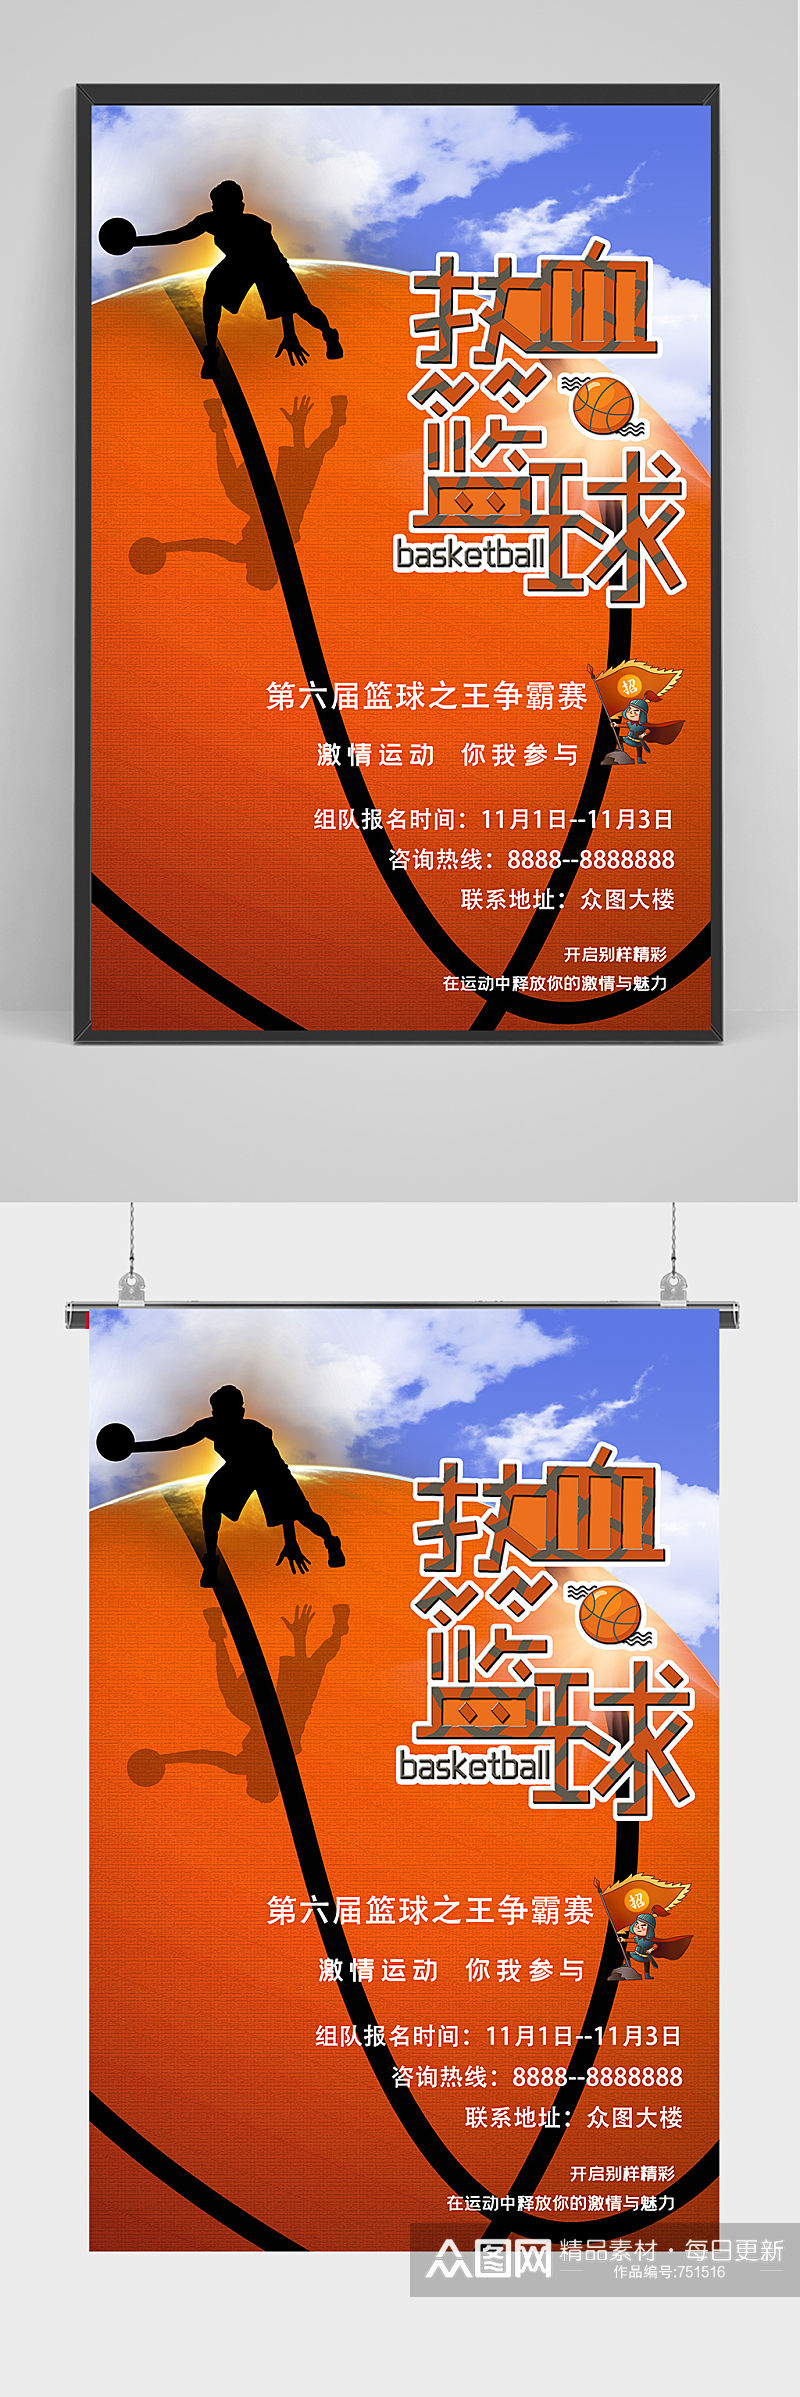 热血篮球海报设计素材